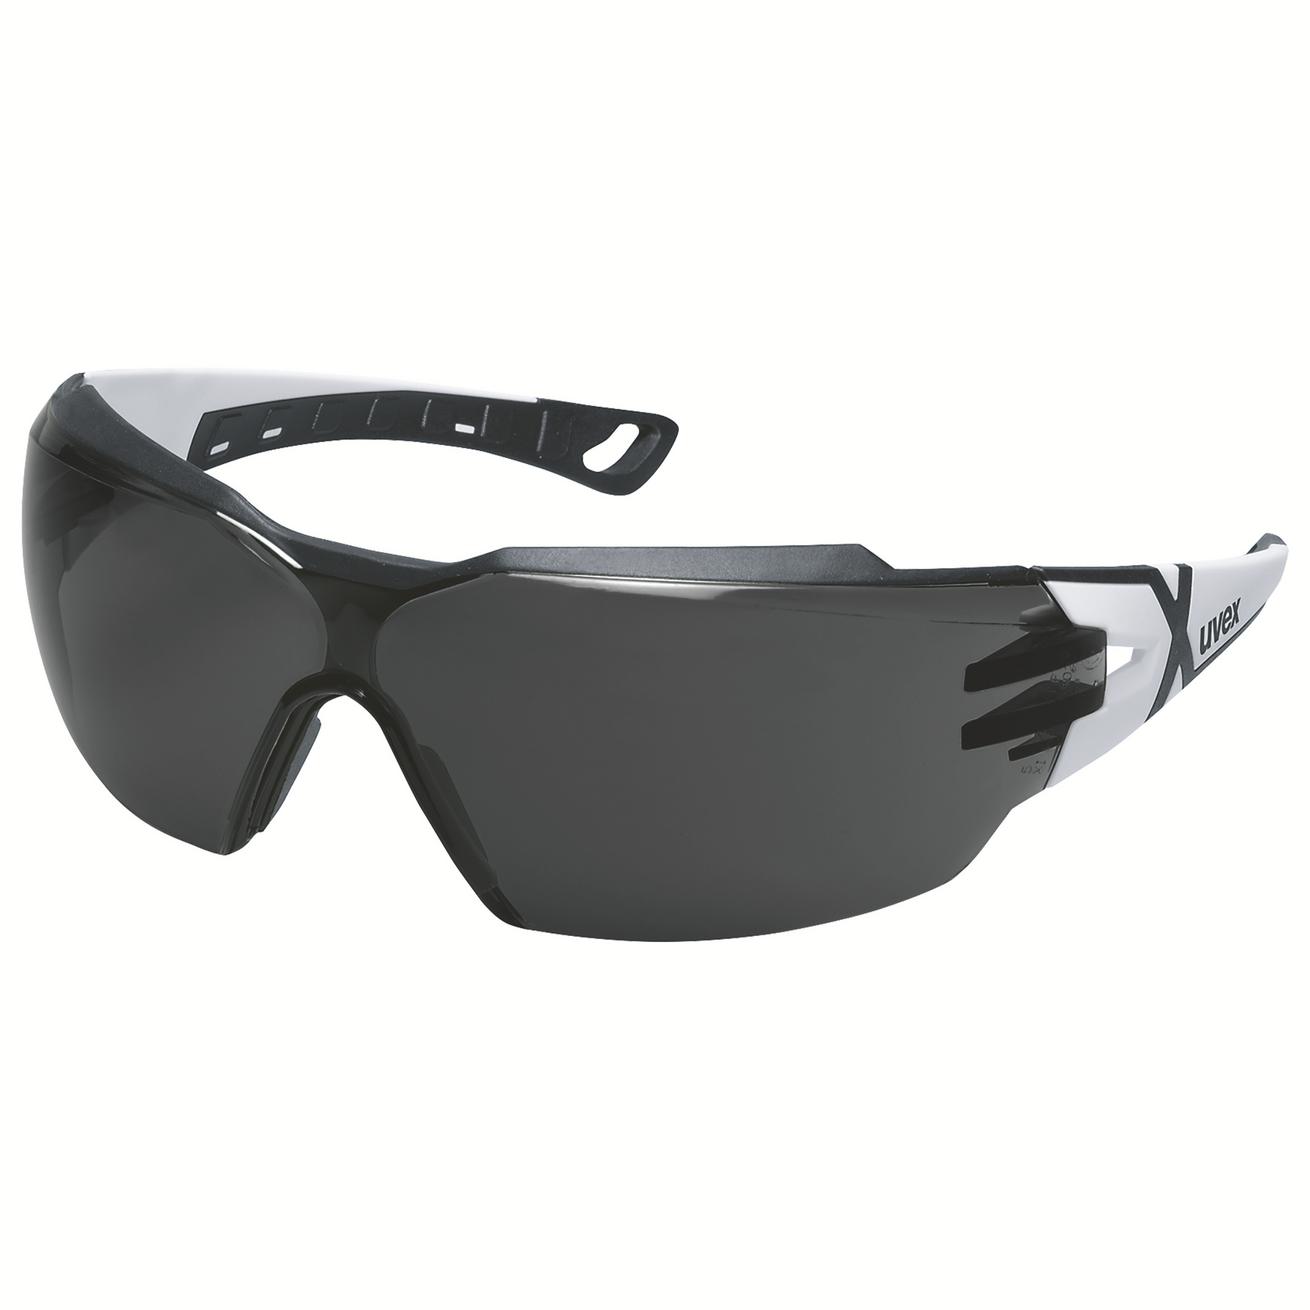 Brýle uvex pheos cx2 Kód produktu: 9198230, Provedení zorníku: PC šedý 14%/UV 5-3,1; SV excellence, barva bílá/černá